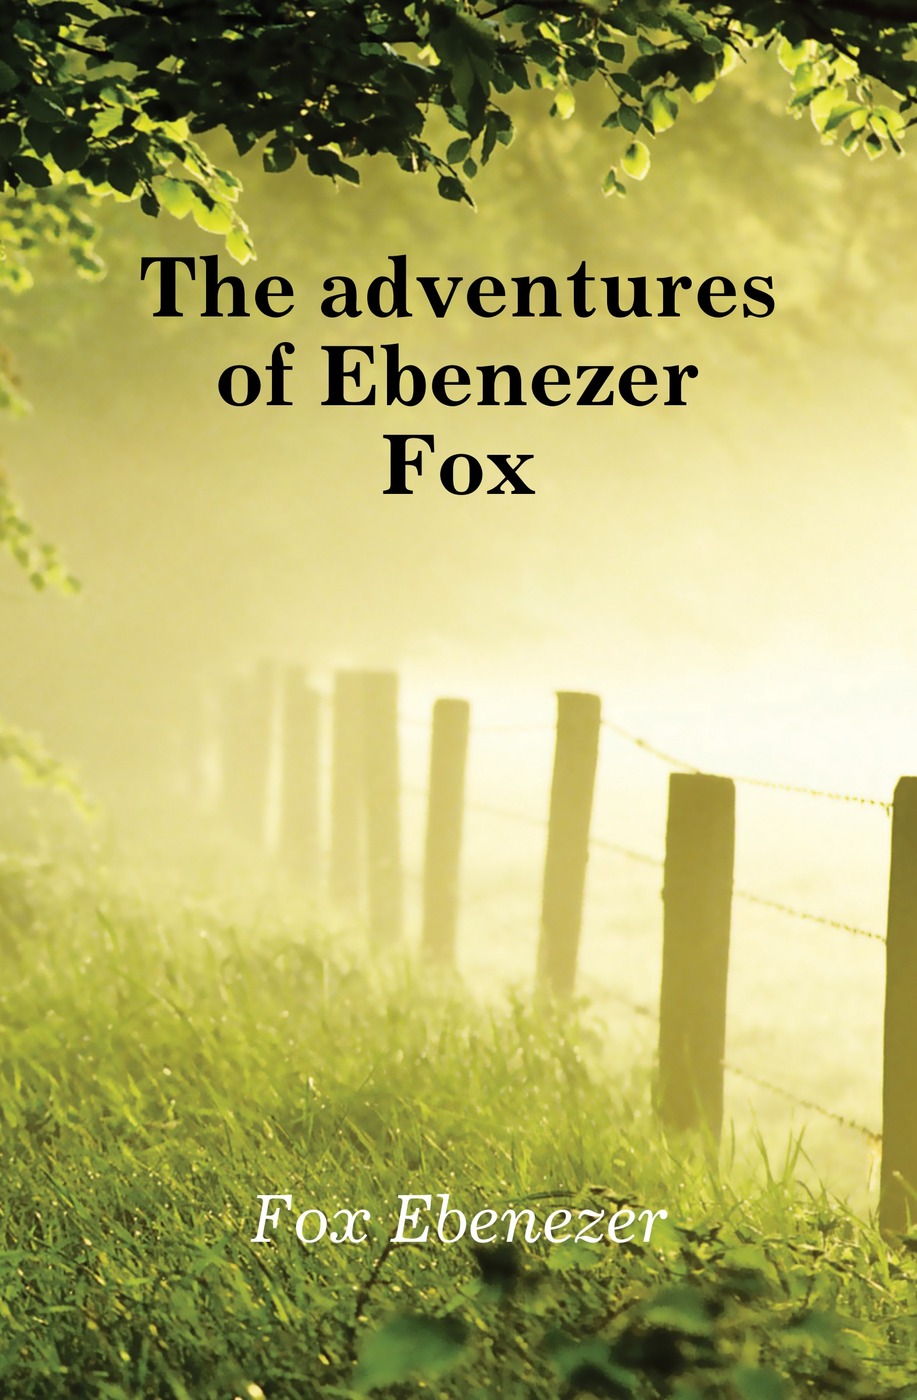 The adventures of Ebenezer Fox